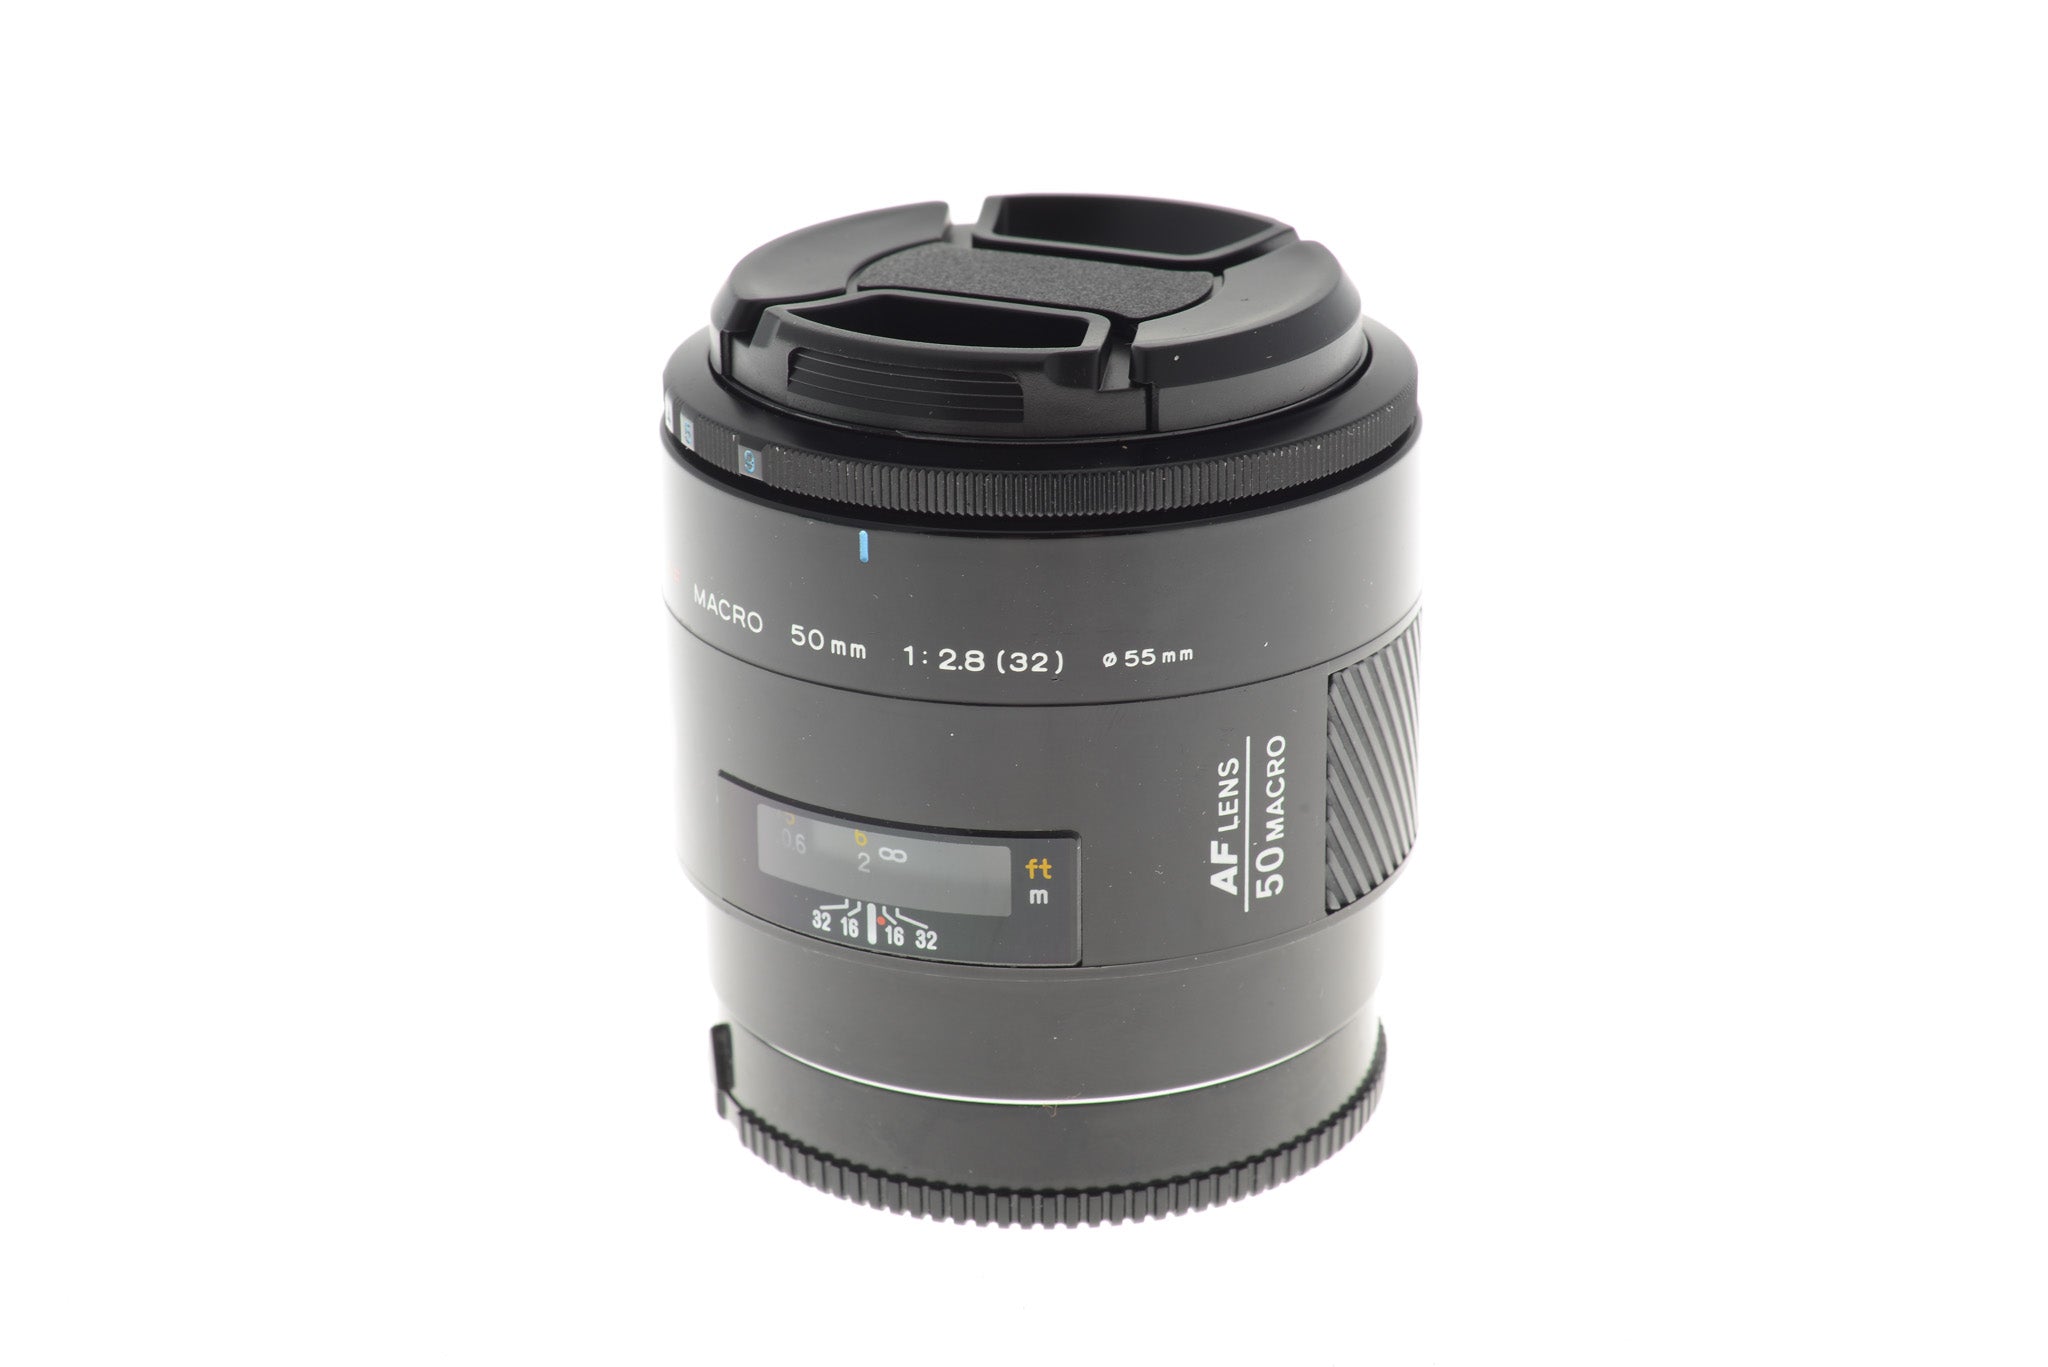 Minolta 50mm f2.8 AF Macro - Lens